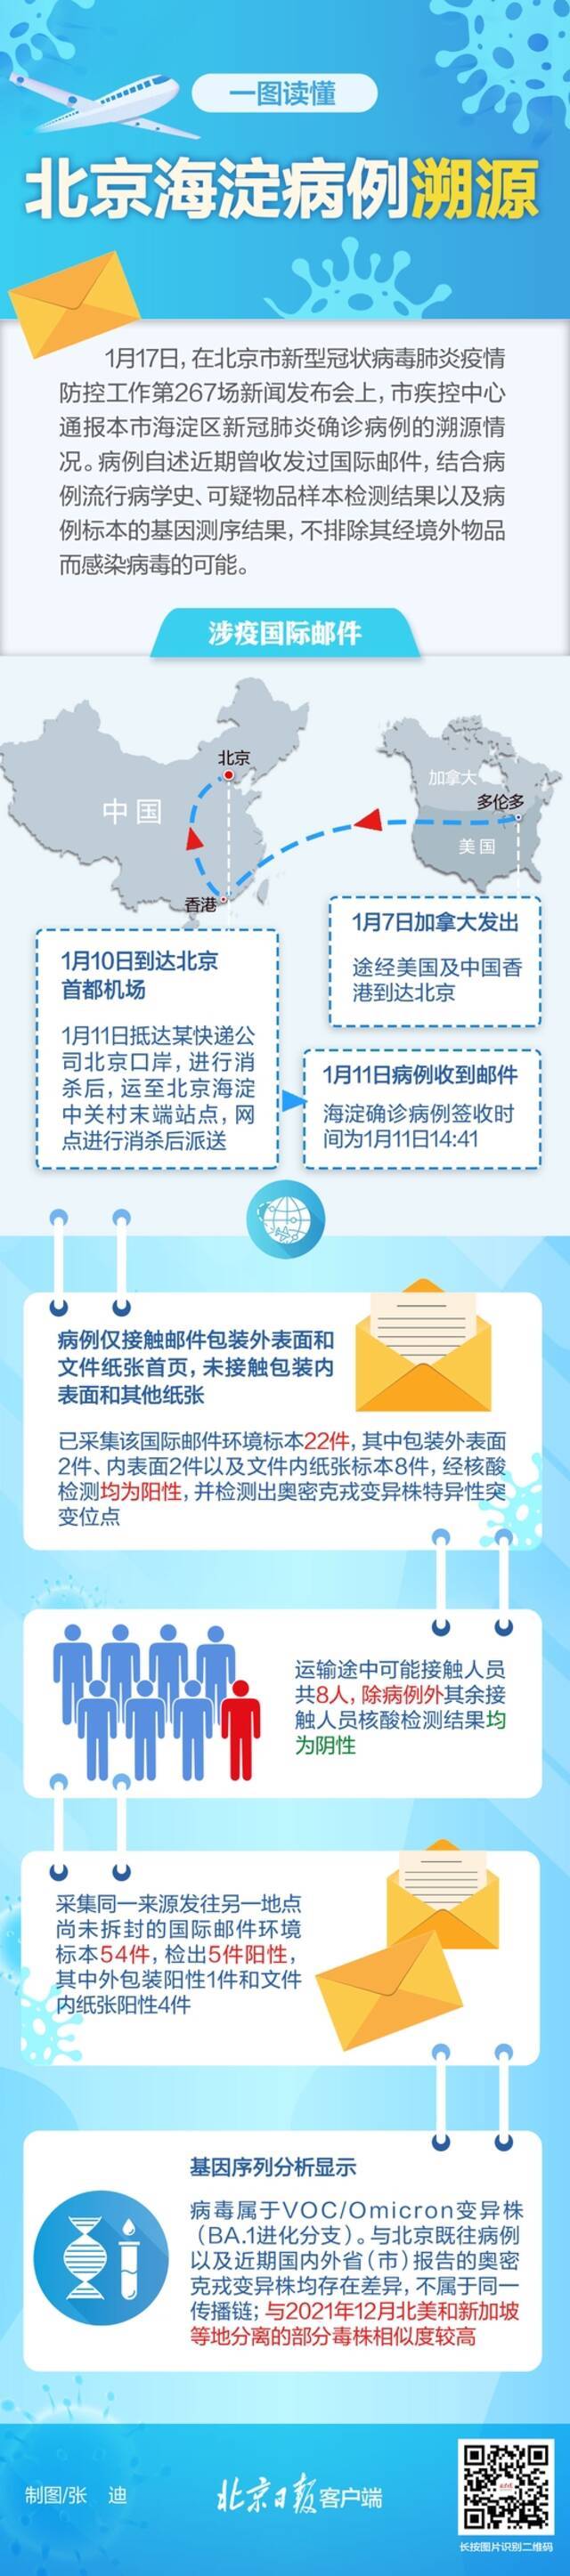 北京1月17日新增1例本土确诊病例